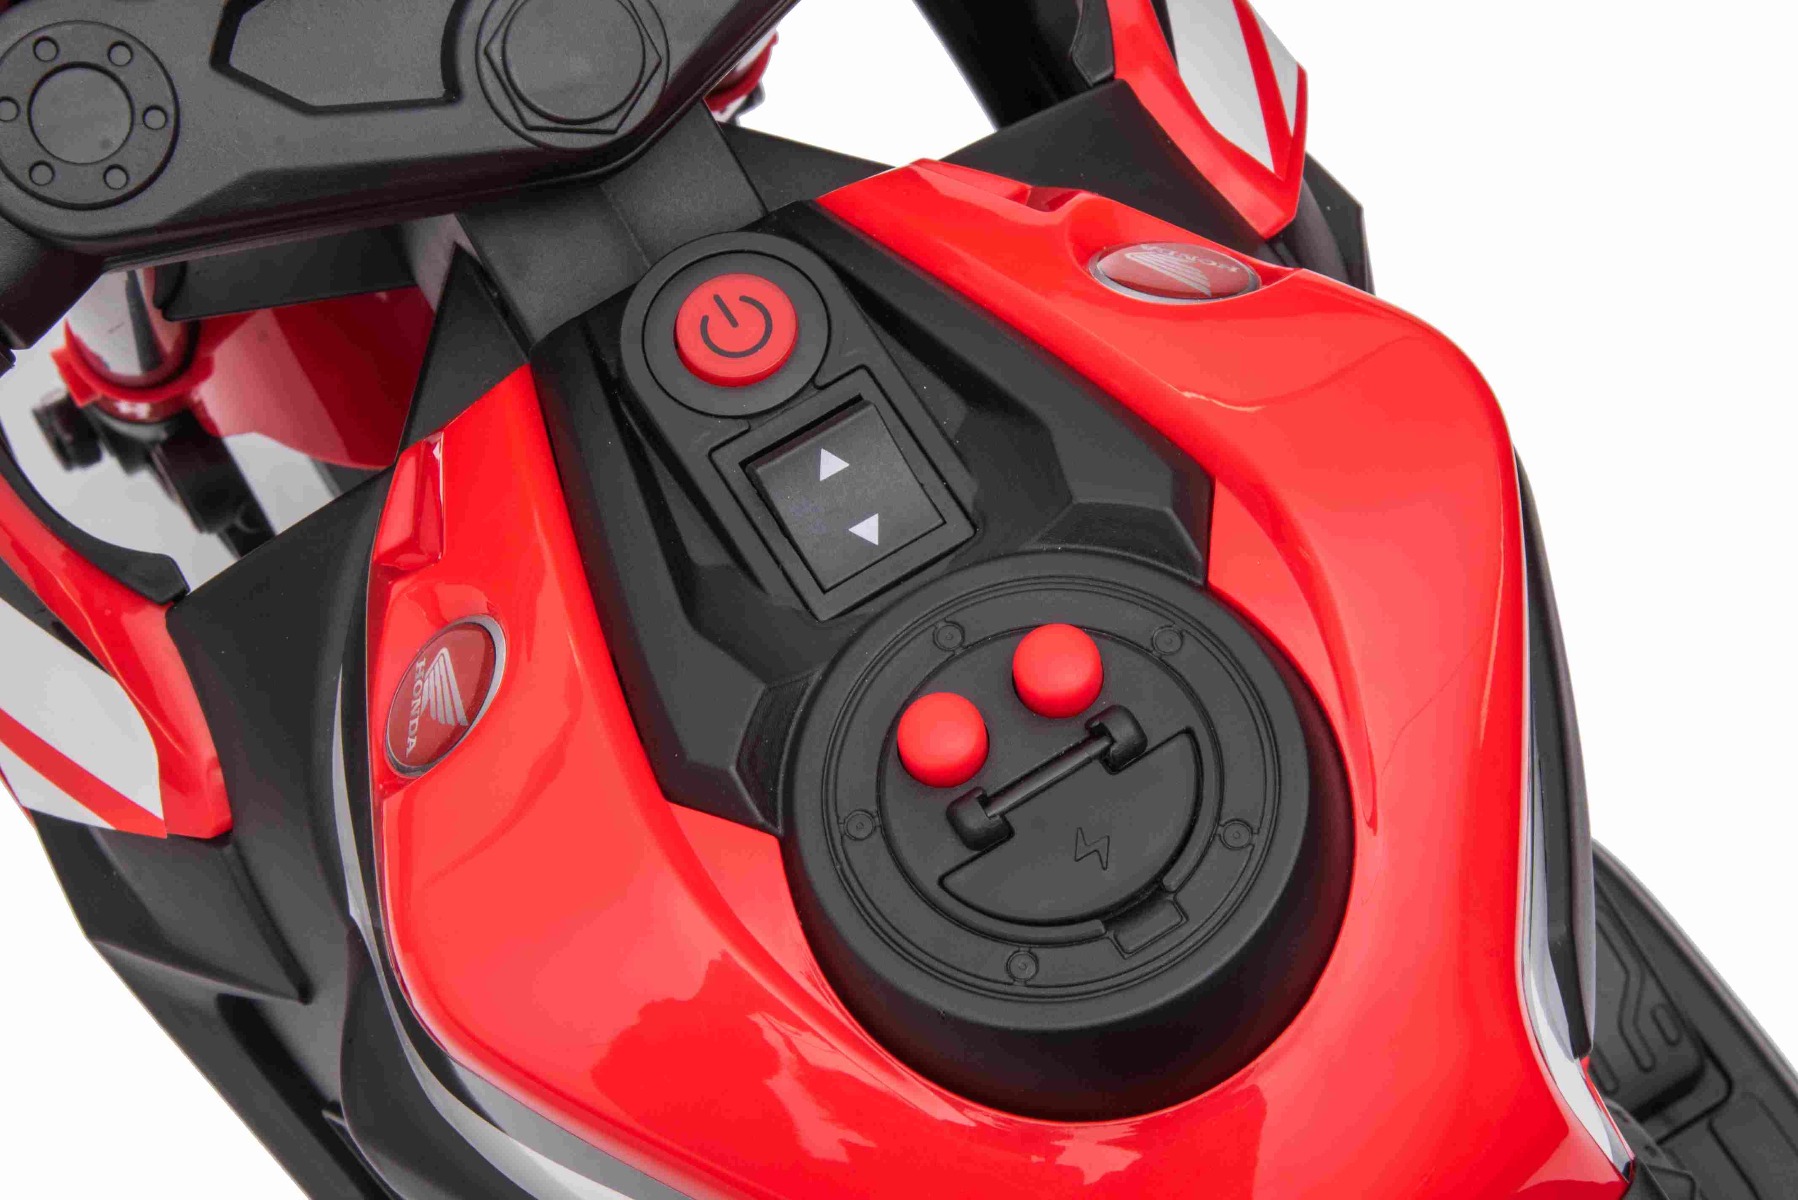 Moto électrique pour enfants LT942 Honda CBR 12V avec lumières LED et sons